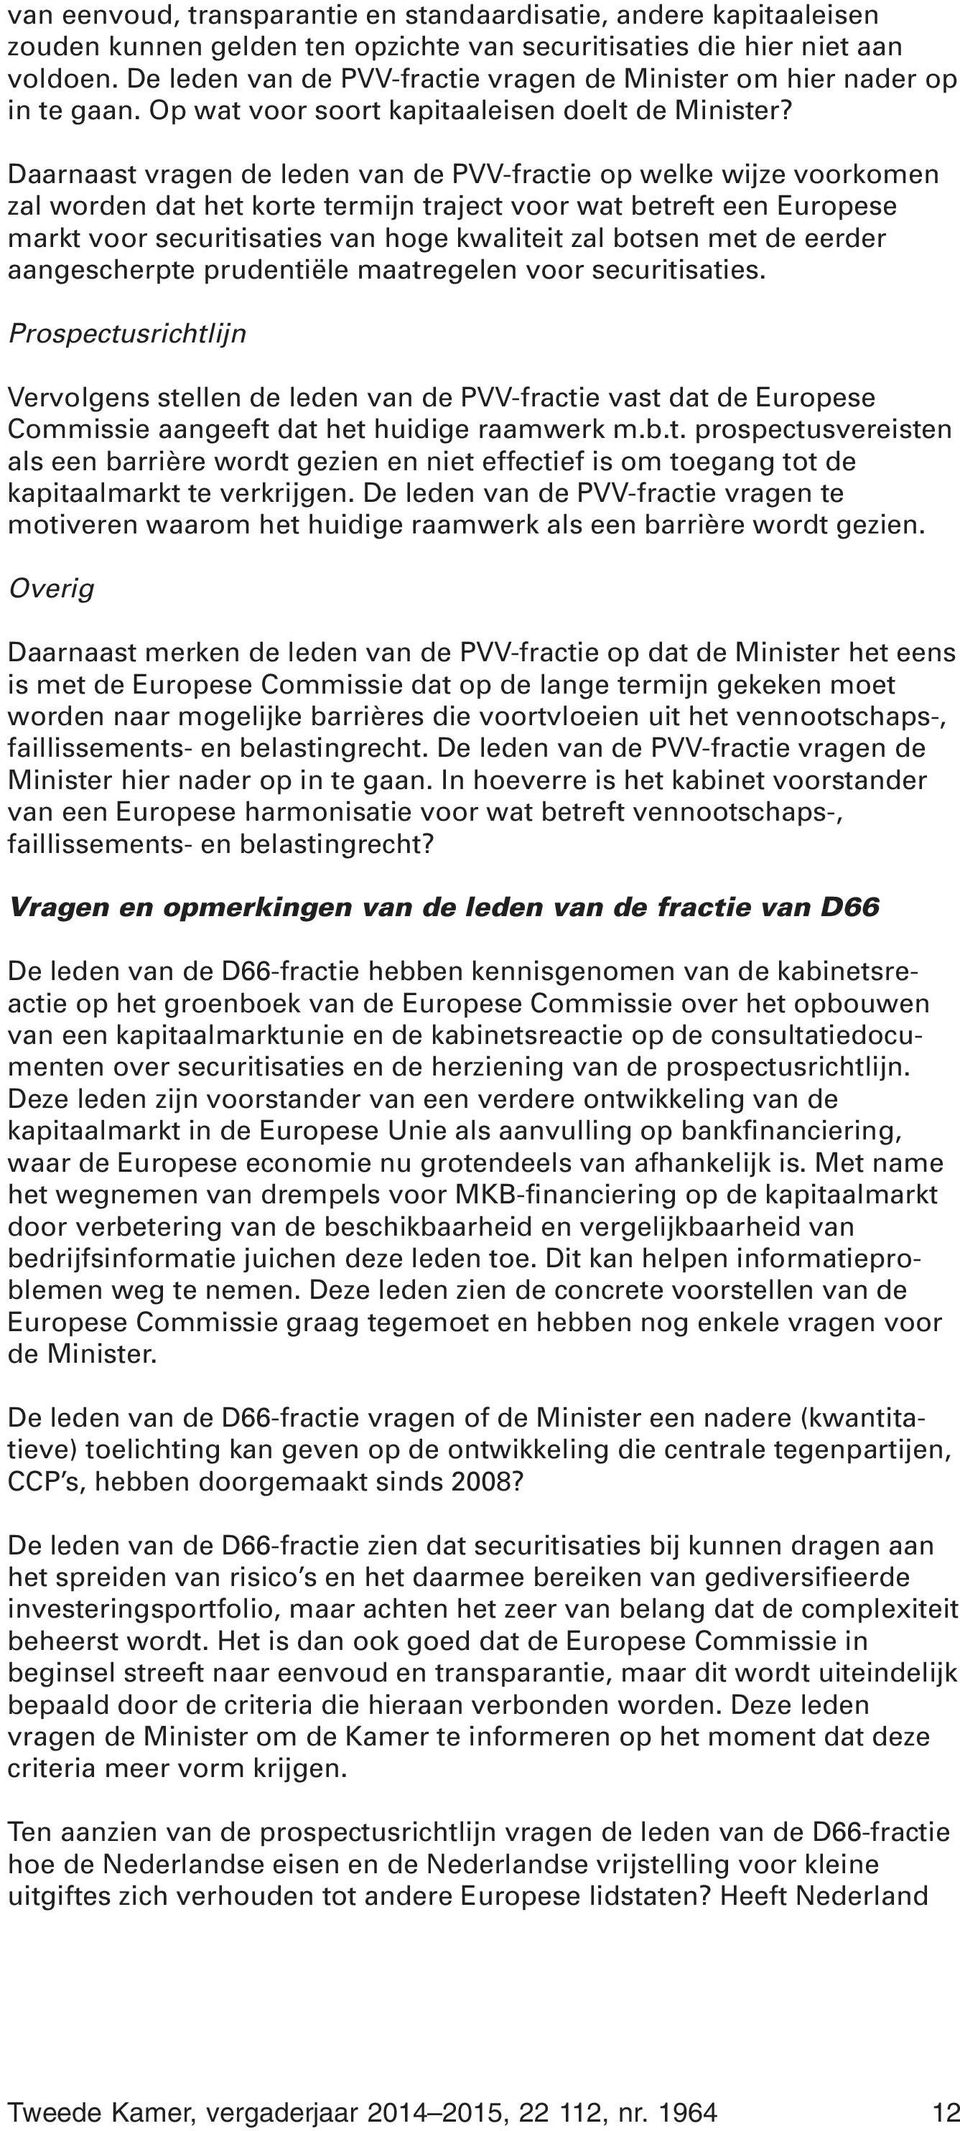 Daarnaast vragen de leden van de PVV-fractie op welke wijze voorkomen zal worden dat het korte termijn traject voor wat betreft een Europese markt voor securitisaties van hoge kwaliteit zal botsen